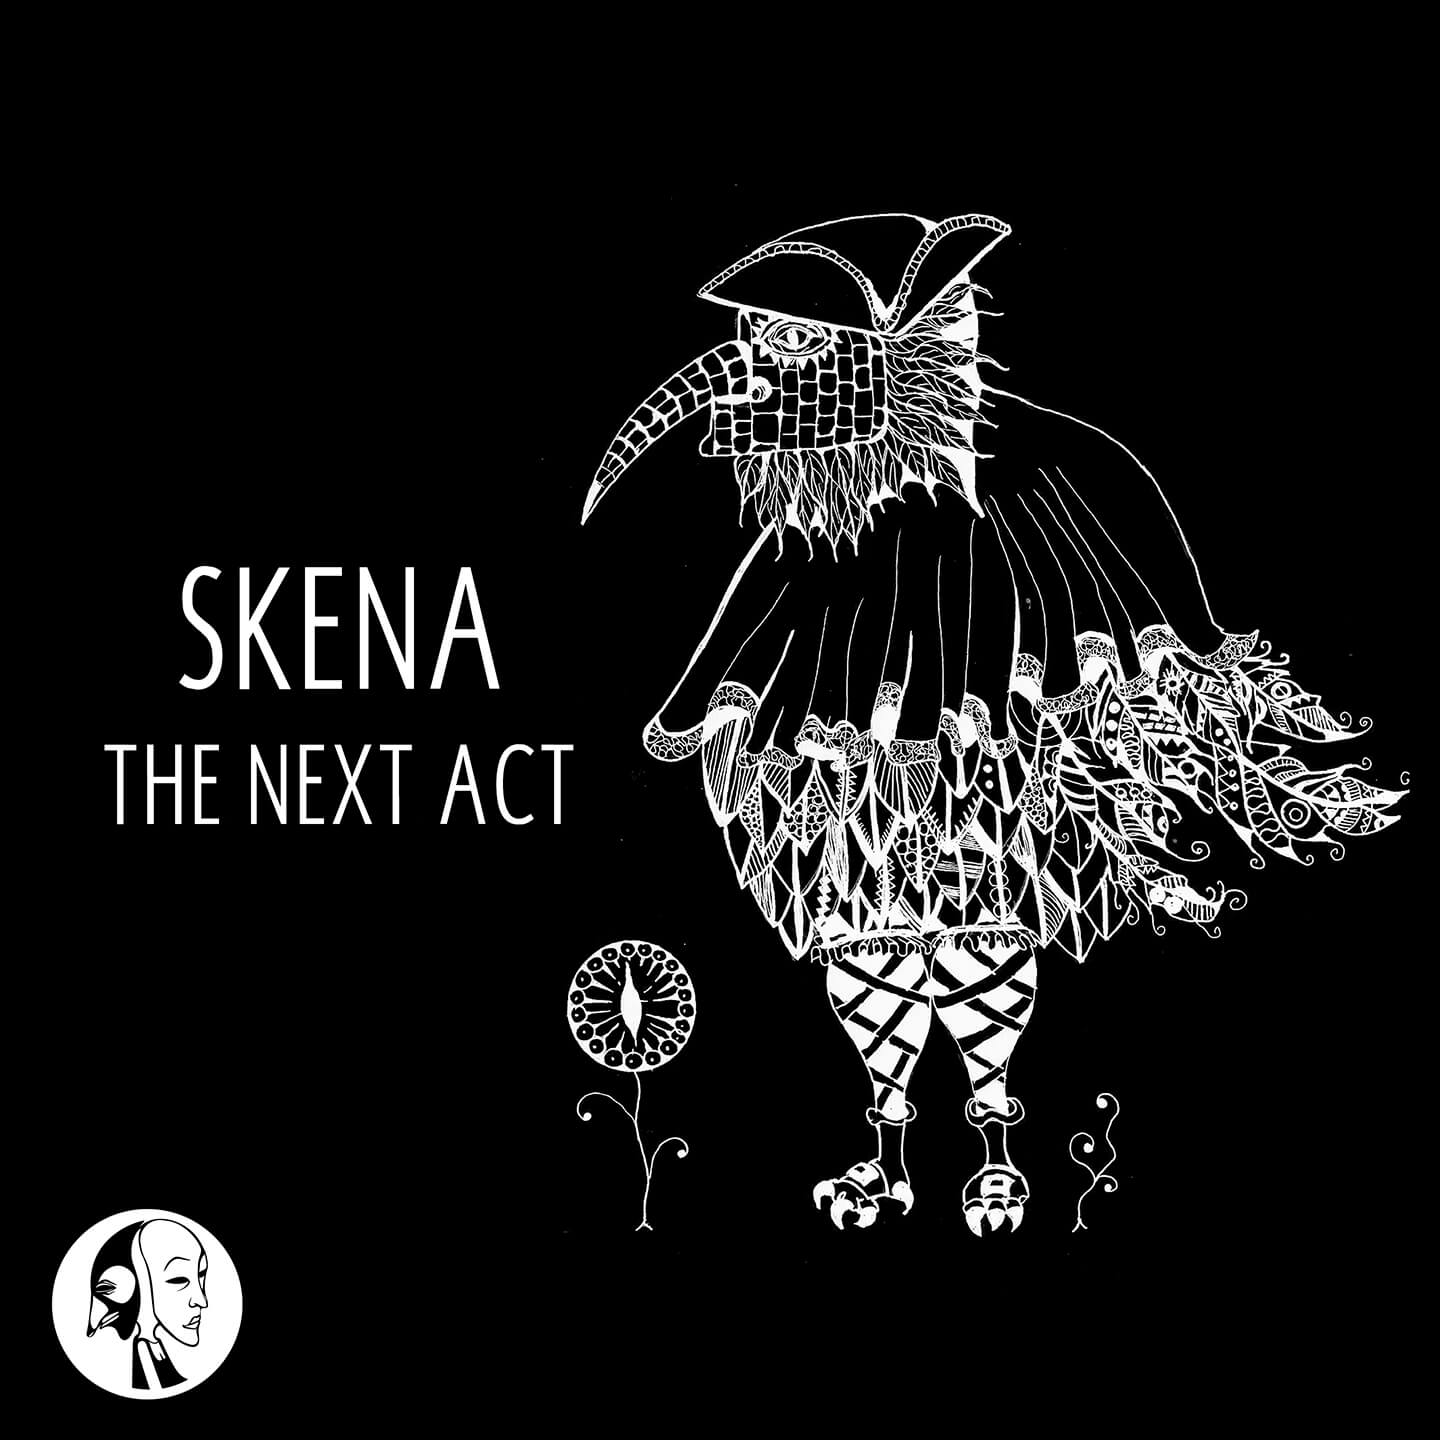 SYYKBLK001 Skena The Next Act